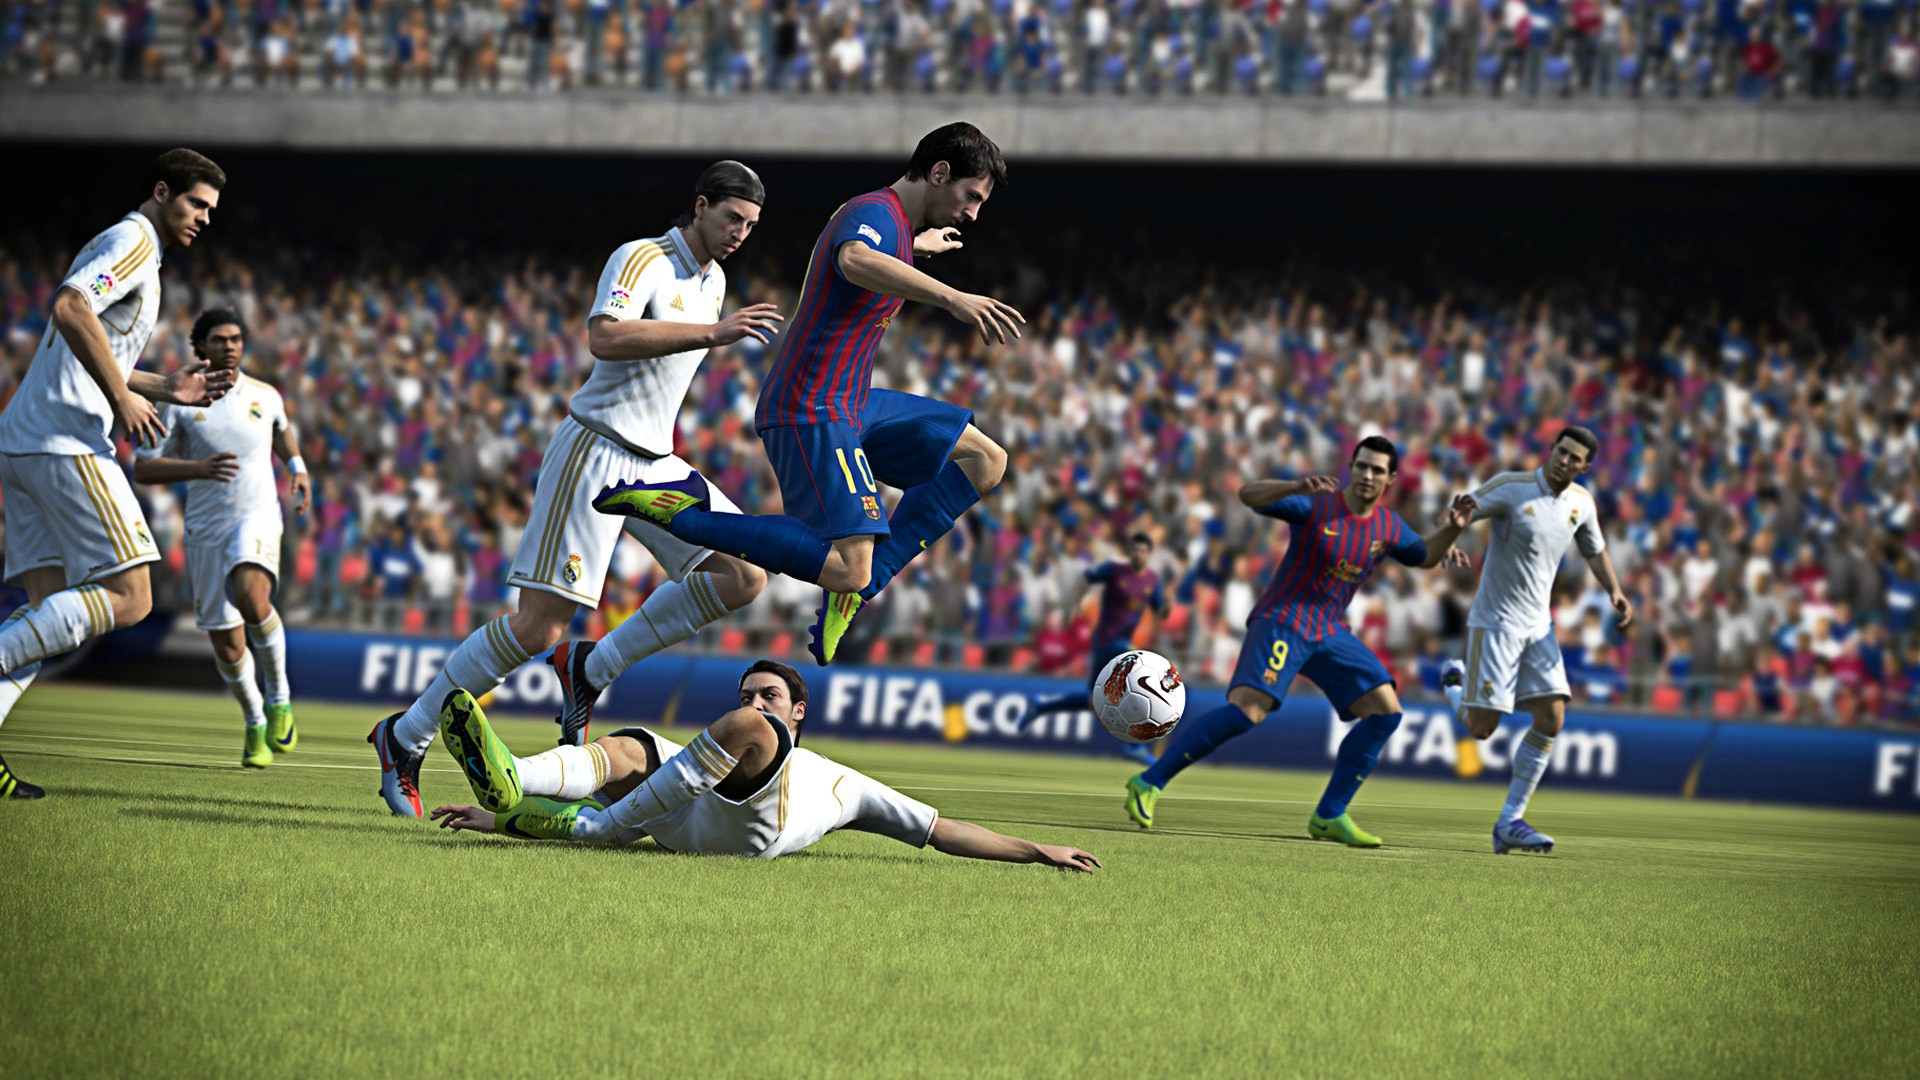 Impressie: FIFA 13, het realisme heerst